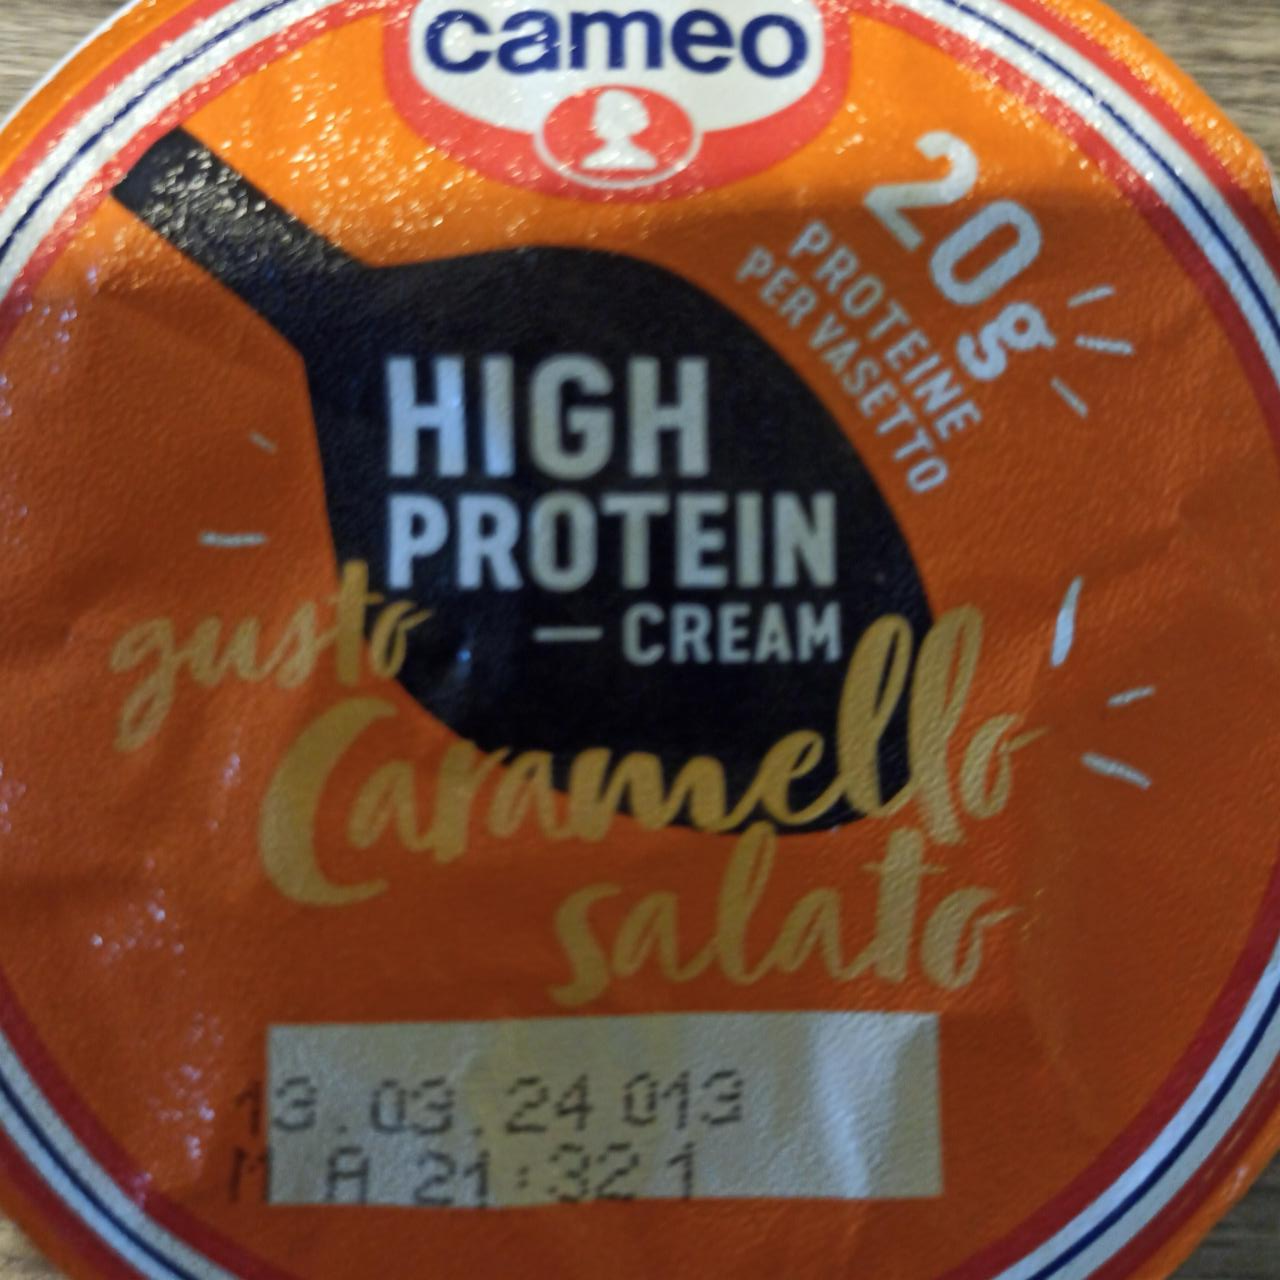 Zdjęcia - High Protein Cream Gusto Caramello Salato Cameo